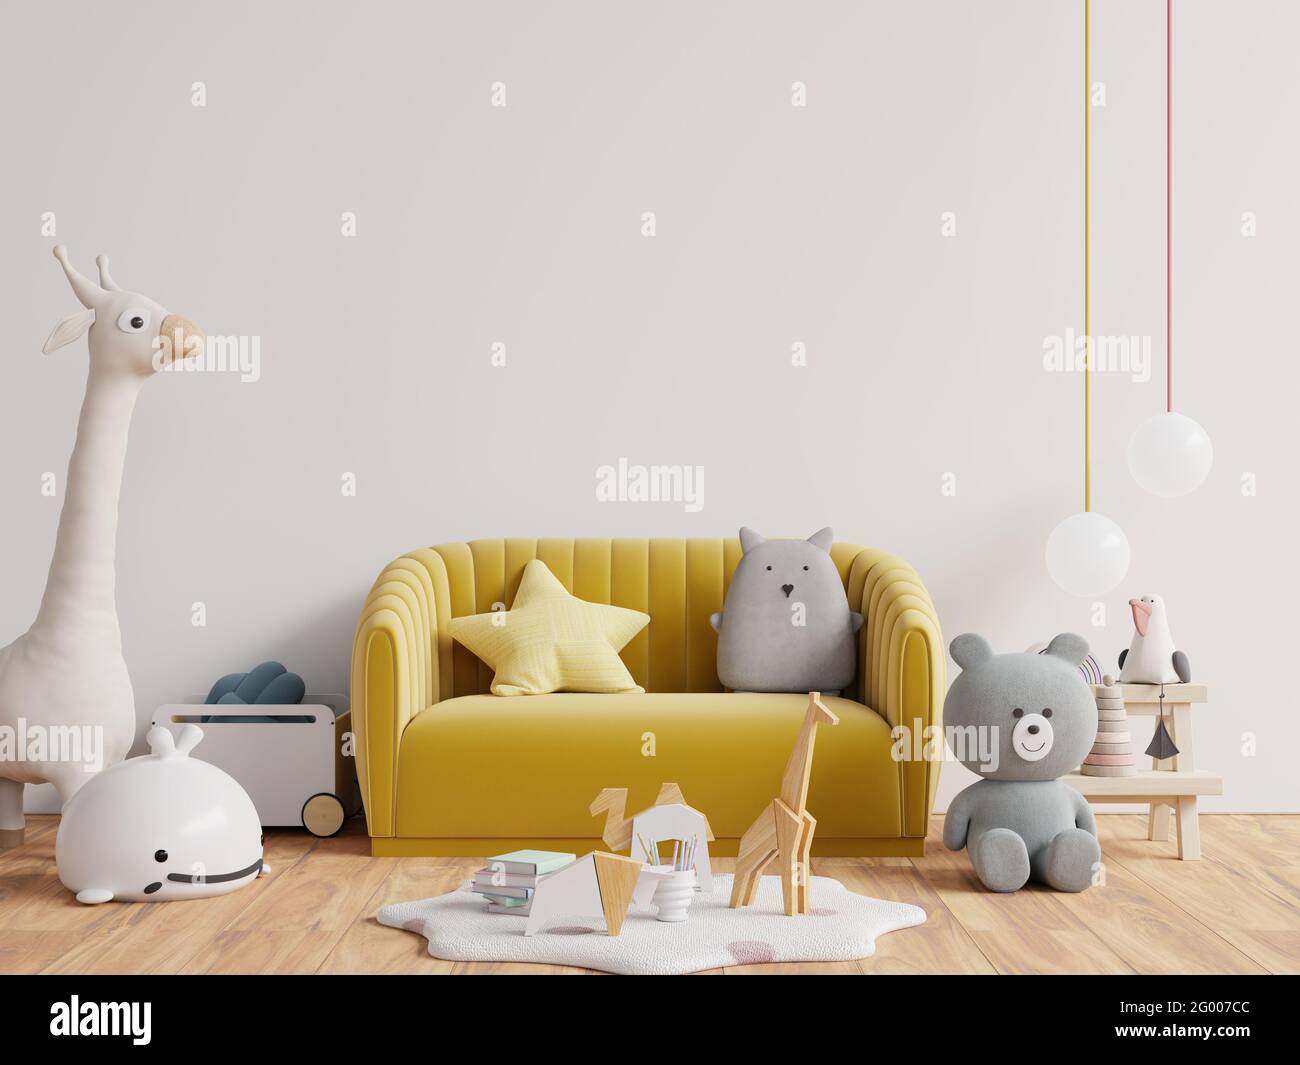 Mur maquette dans la chambre des enfants avec canapé jaune Fond de paroi blanc vide.rendu 3D Banque D'Images